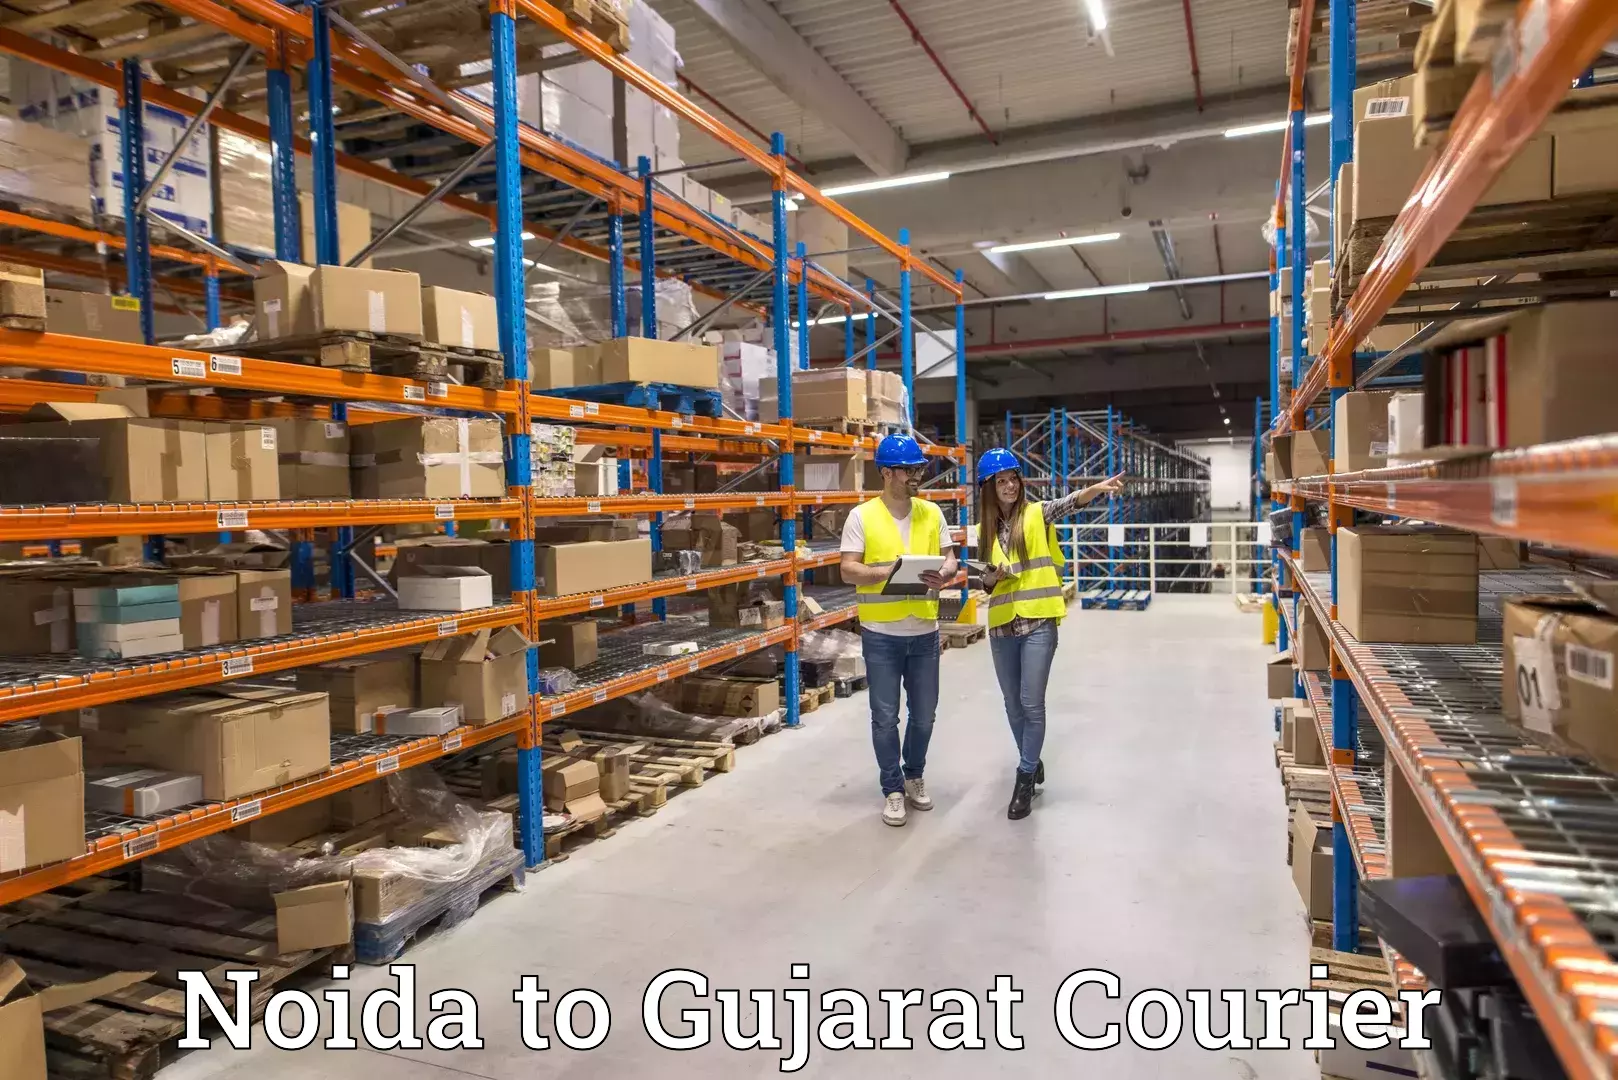 Customer-centric shipping Noida to Vyara